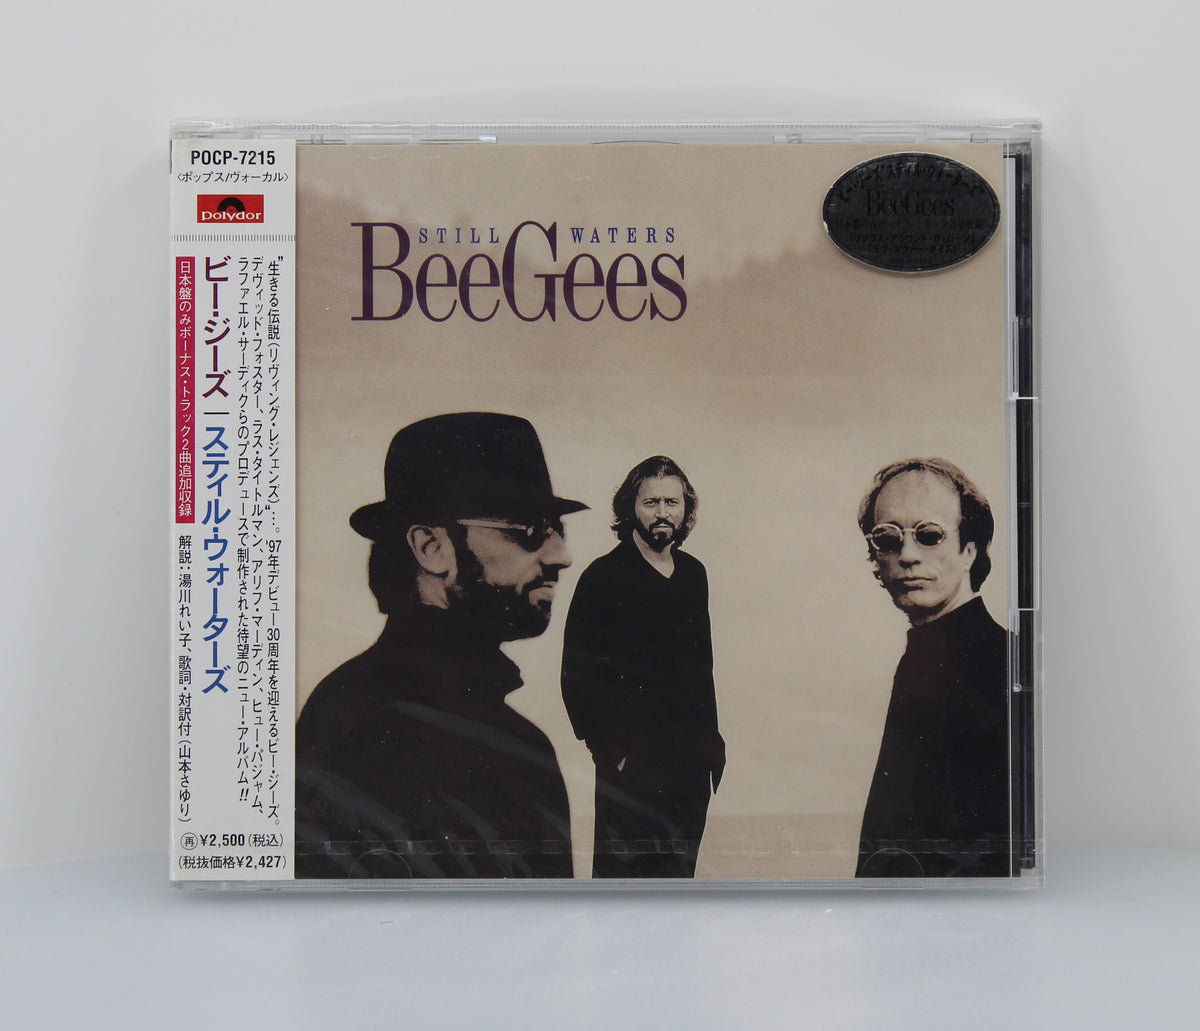 Bee Gees ‎– Still Waters, CD, HDCD, Album, Japan 1997